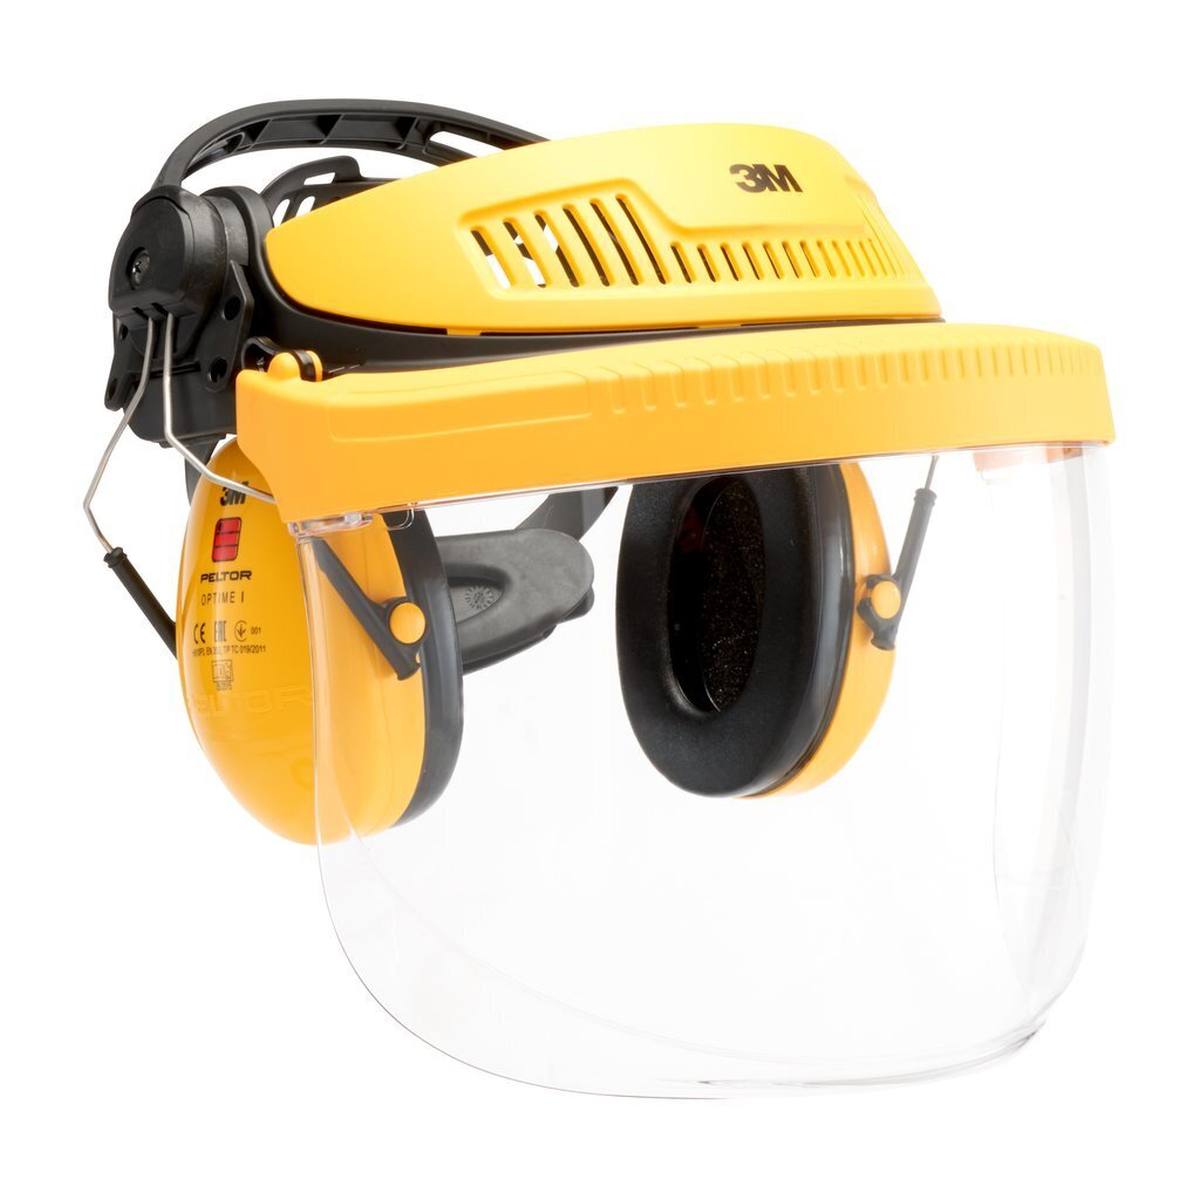 3M Gesichtsschutz G500, Multisystem G500V5F11H510-GU Kopfhalterung - gelb inkl. Kapselgehörschutz H510P3E, SNR = 26 dB mit Visier 5F-11 Polycarbonat